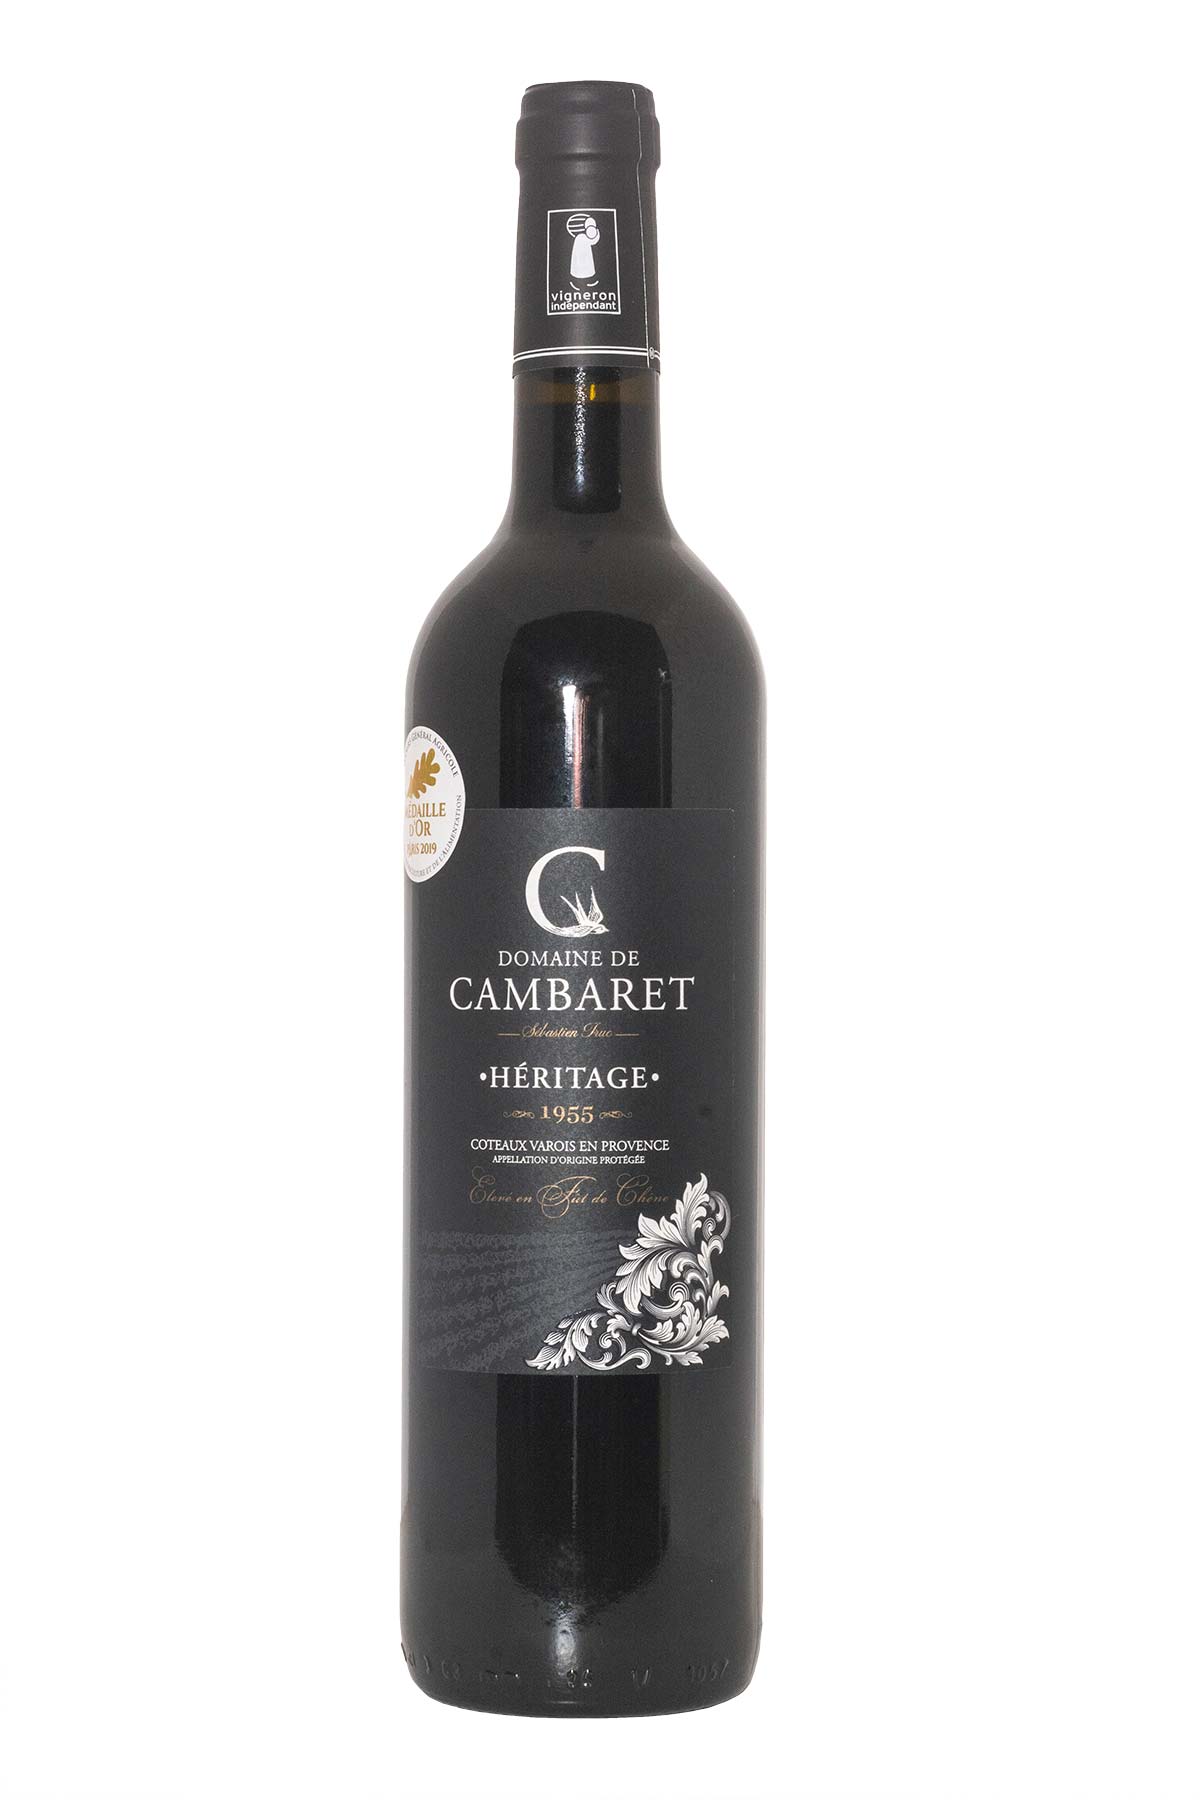 Domaine de Cambaret Coteaux-varois-en-provence HERITAGE vin rouge